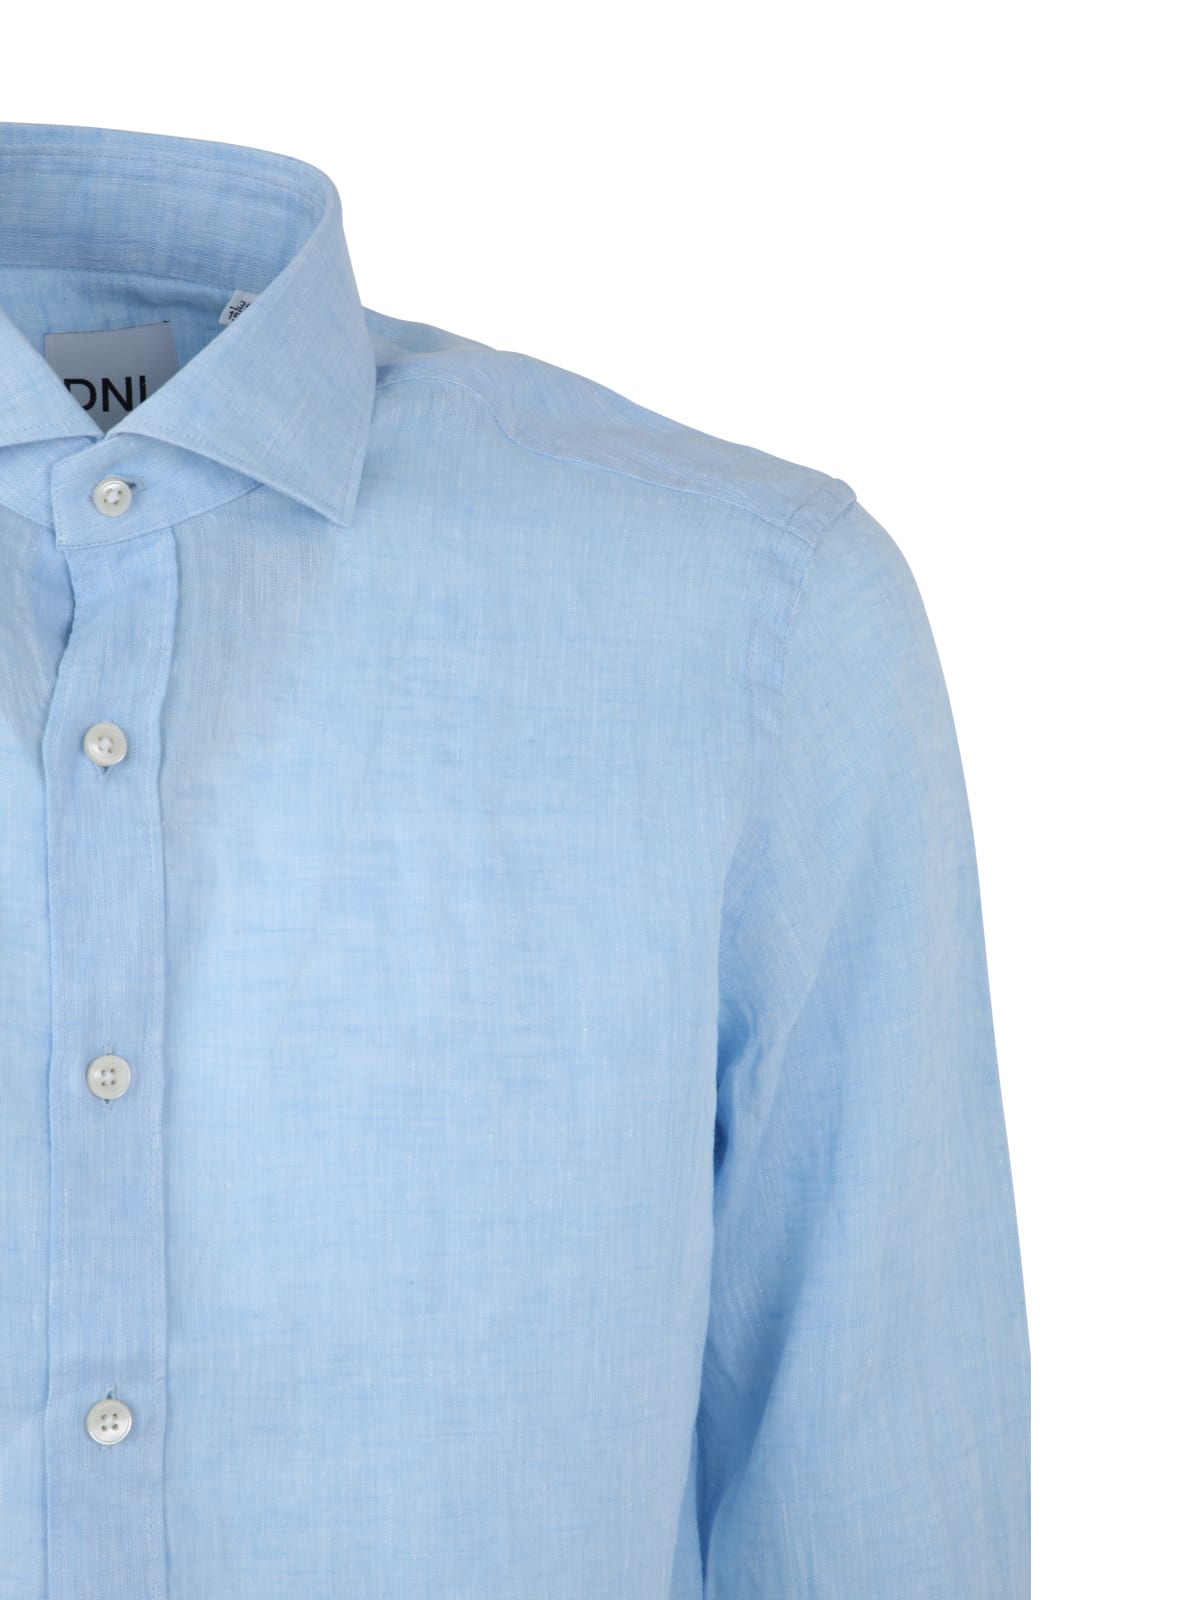 Shop Dnl Linen Classic Shirt In Light Blue